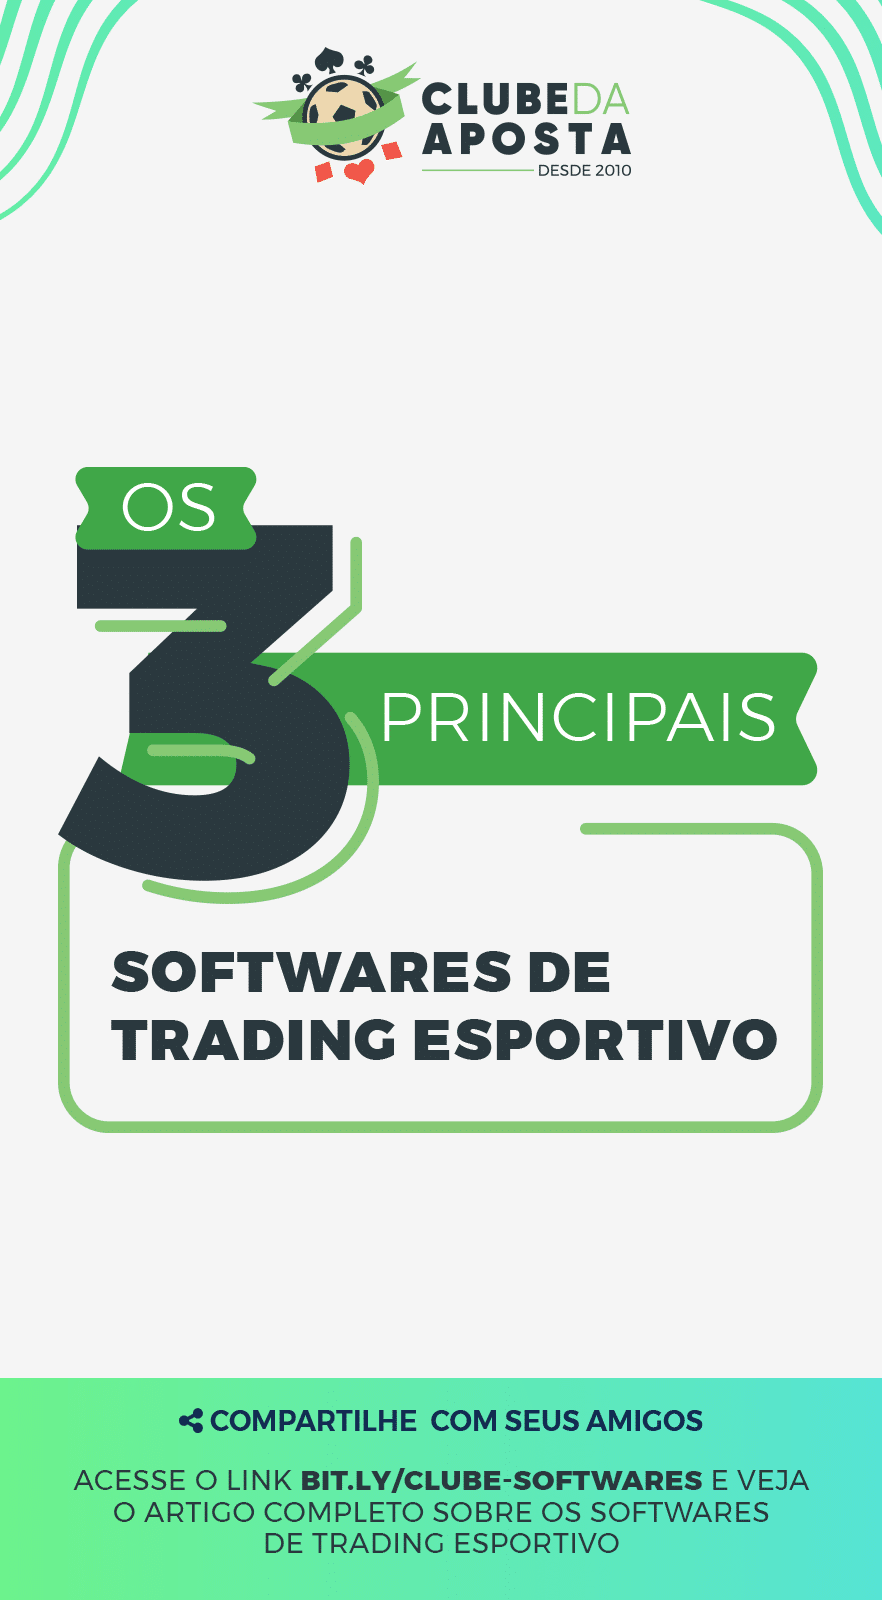 00 Os 3 Principais Softwares De Trading Esportivo 882x1600